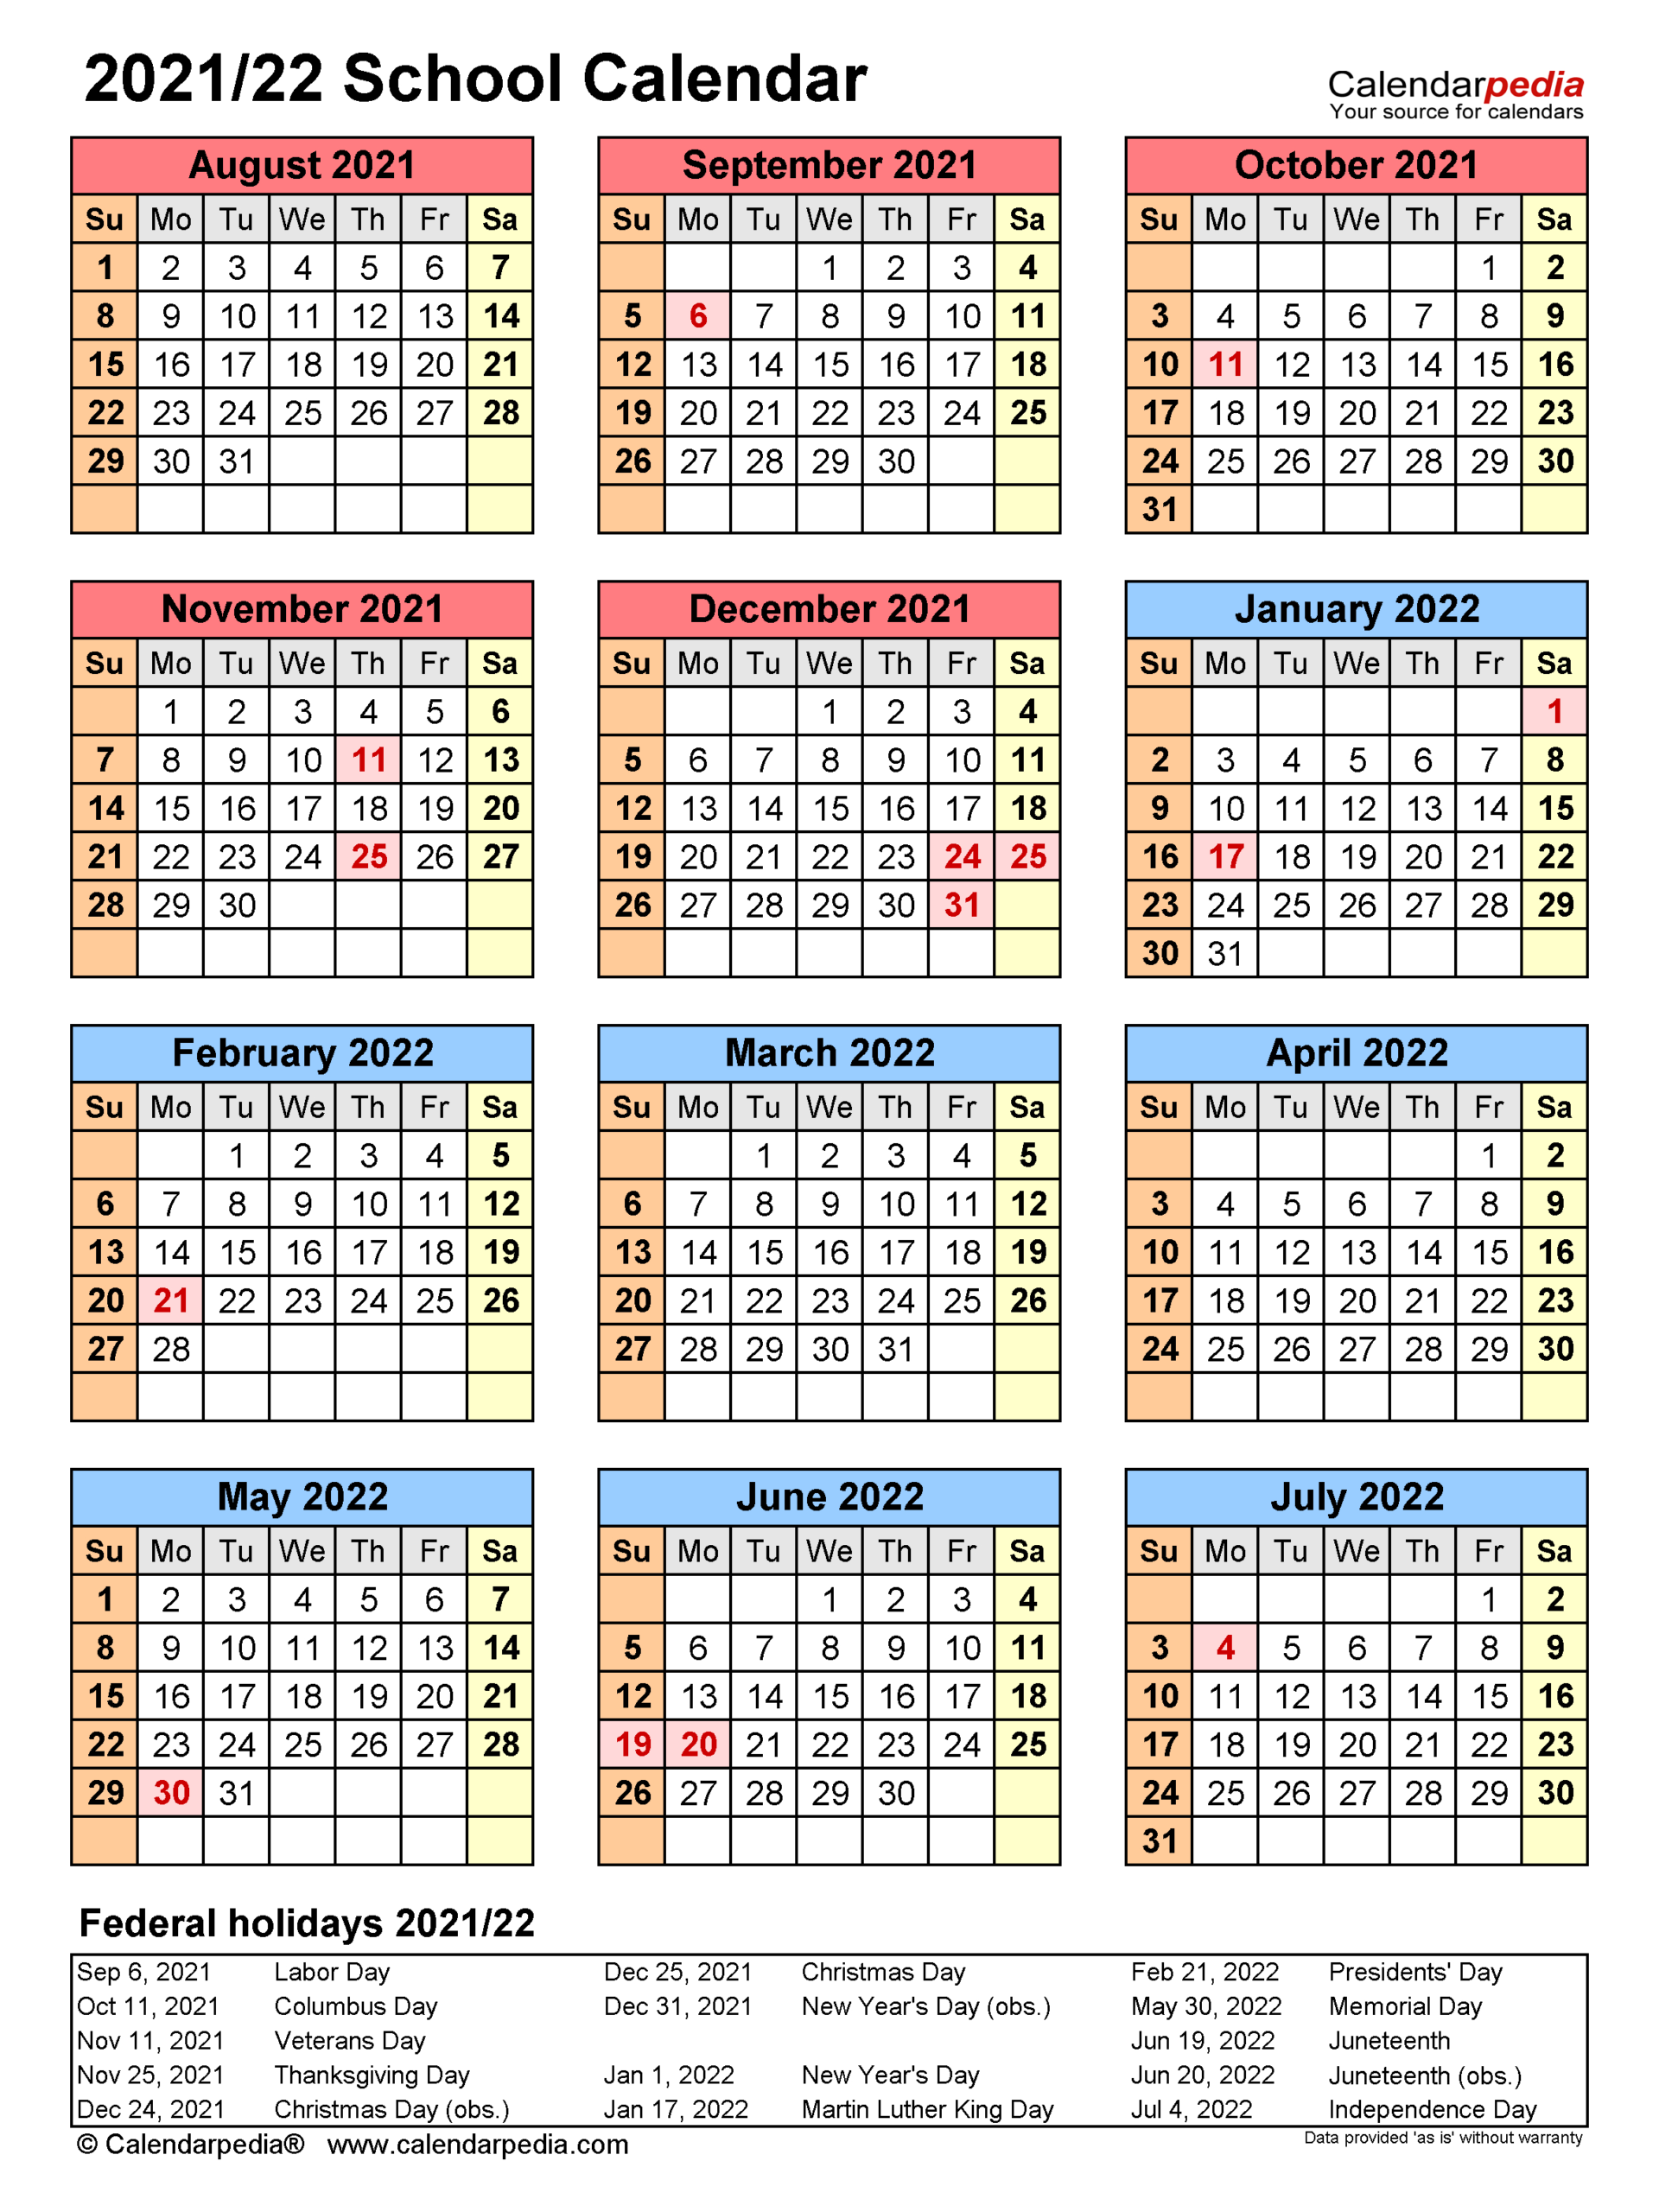 Mexico School Calendar 2021 2022 - Holiday Calendar